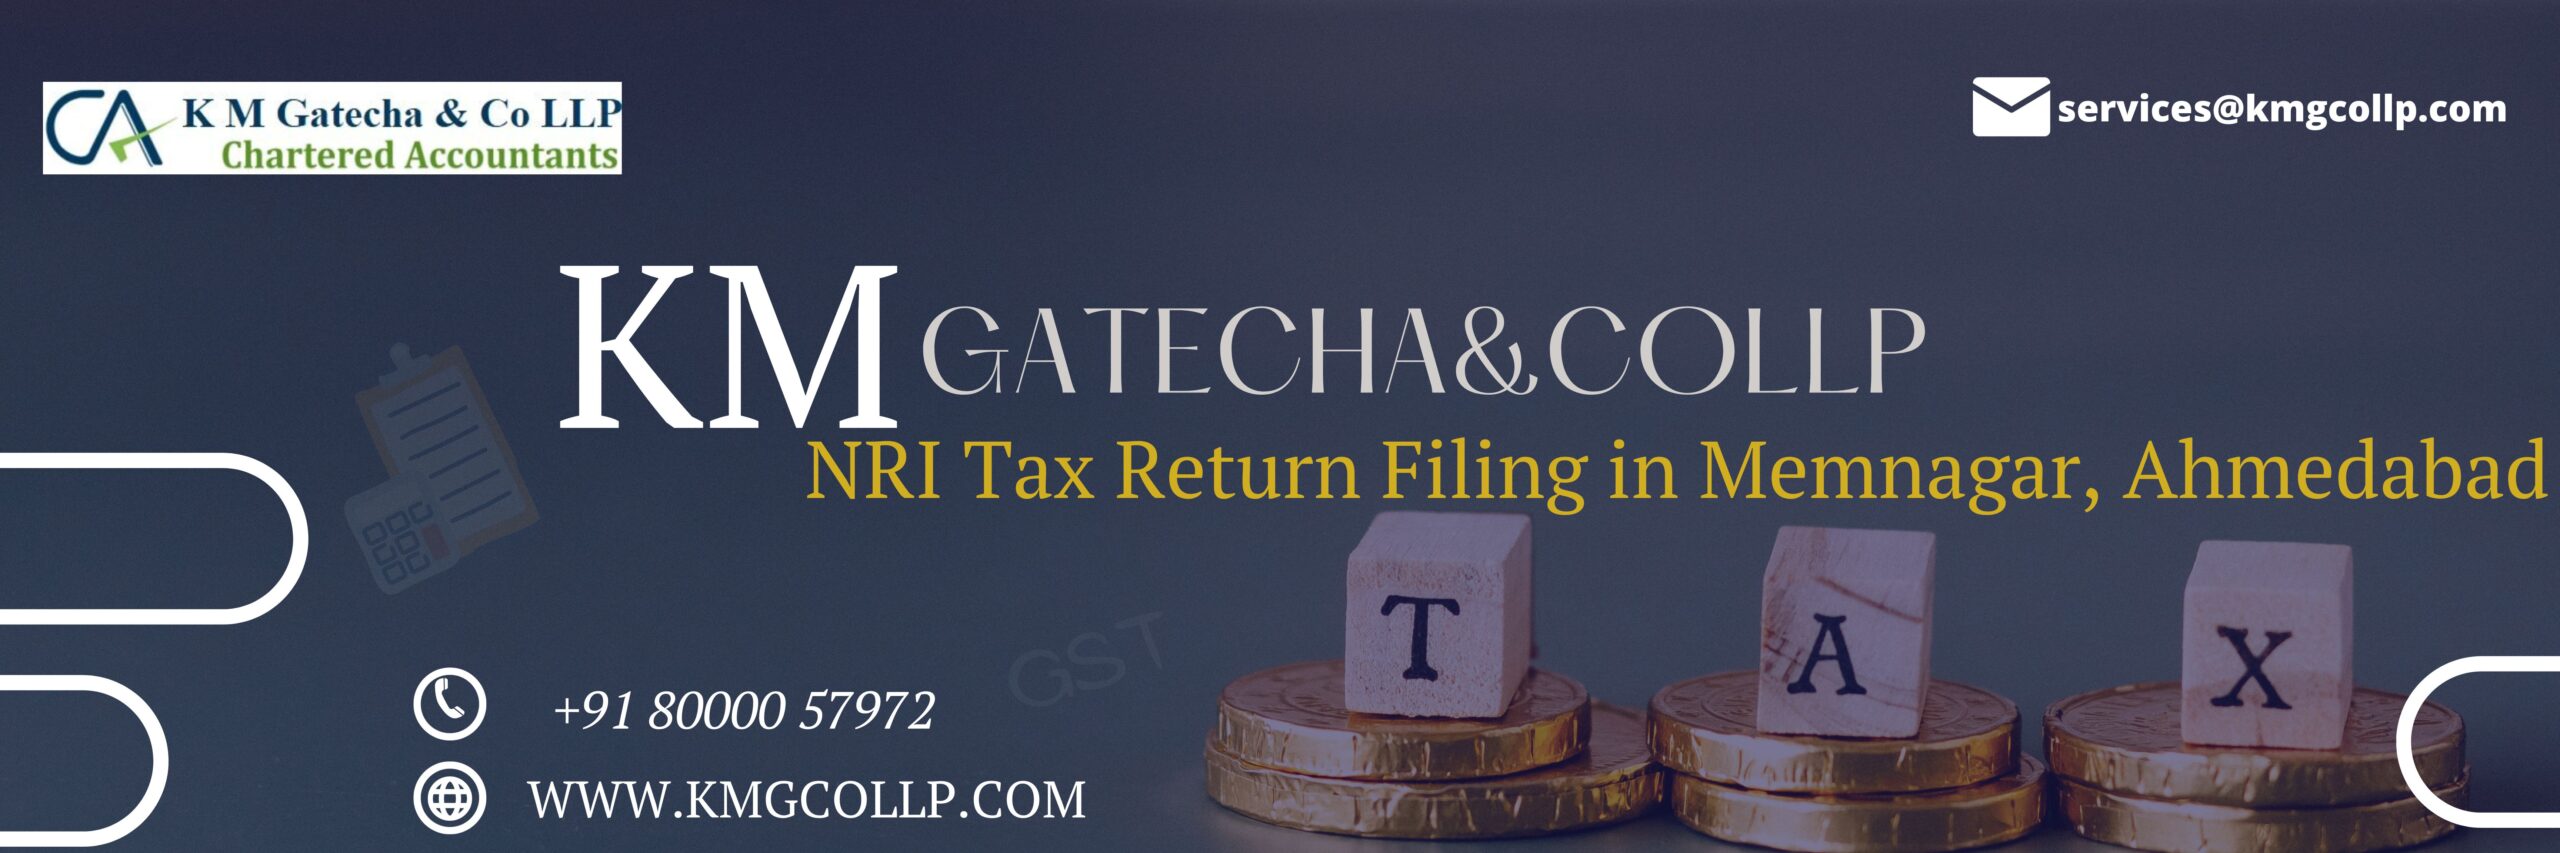 NRI Tax Return Filing in Memnagar